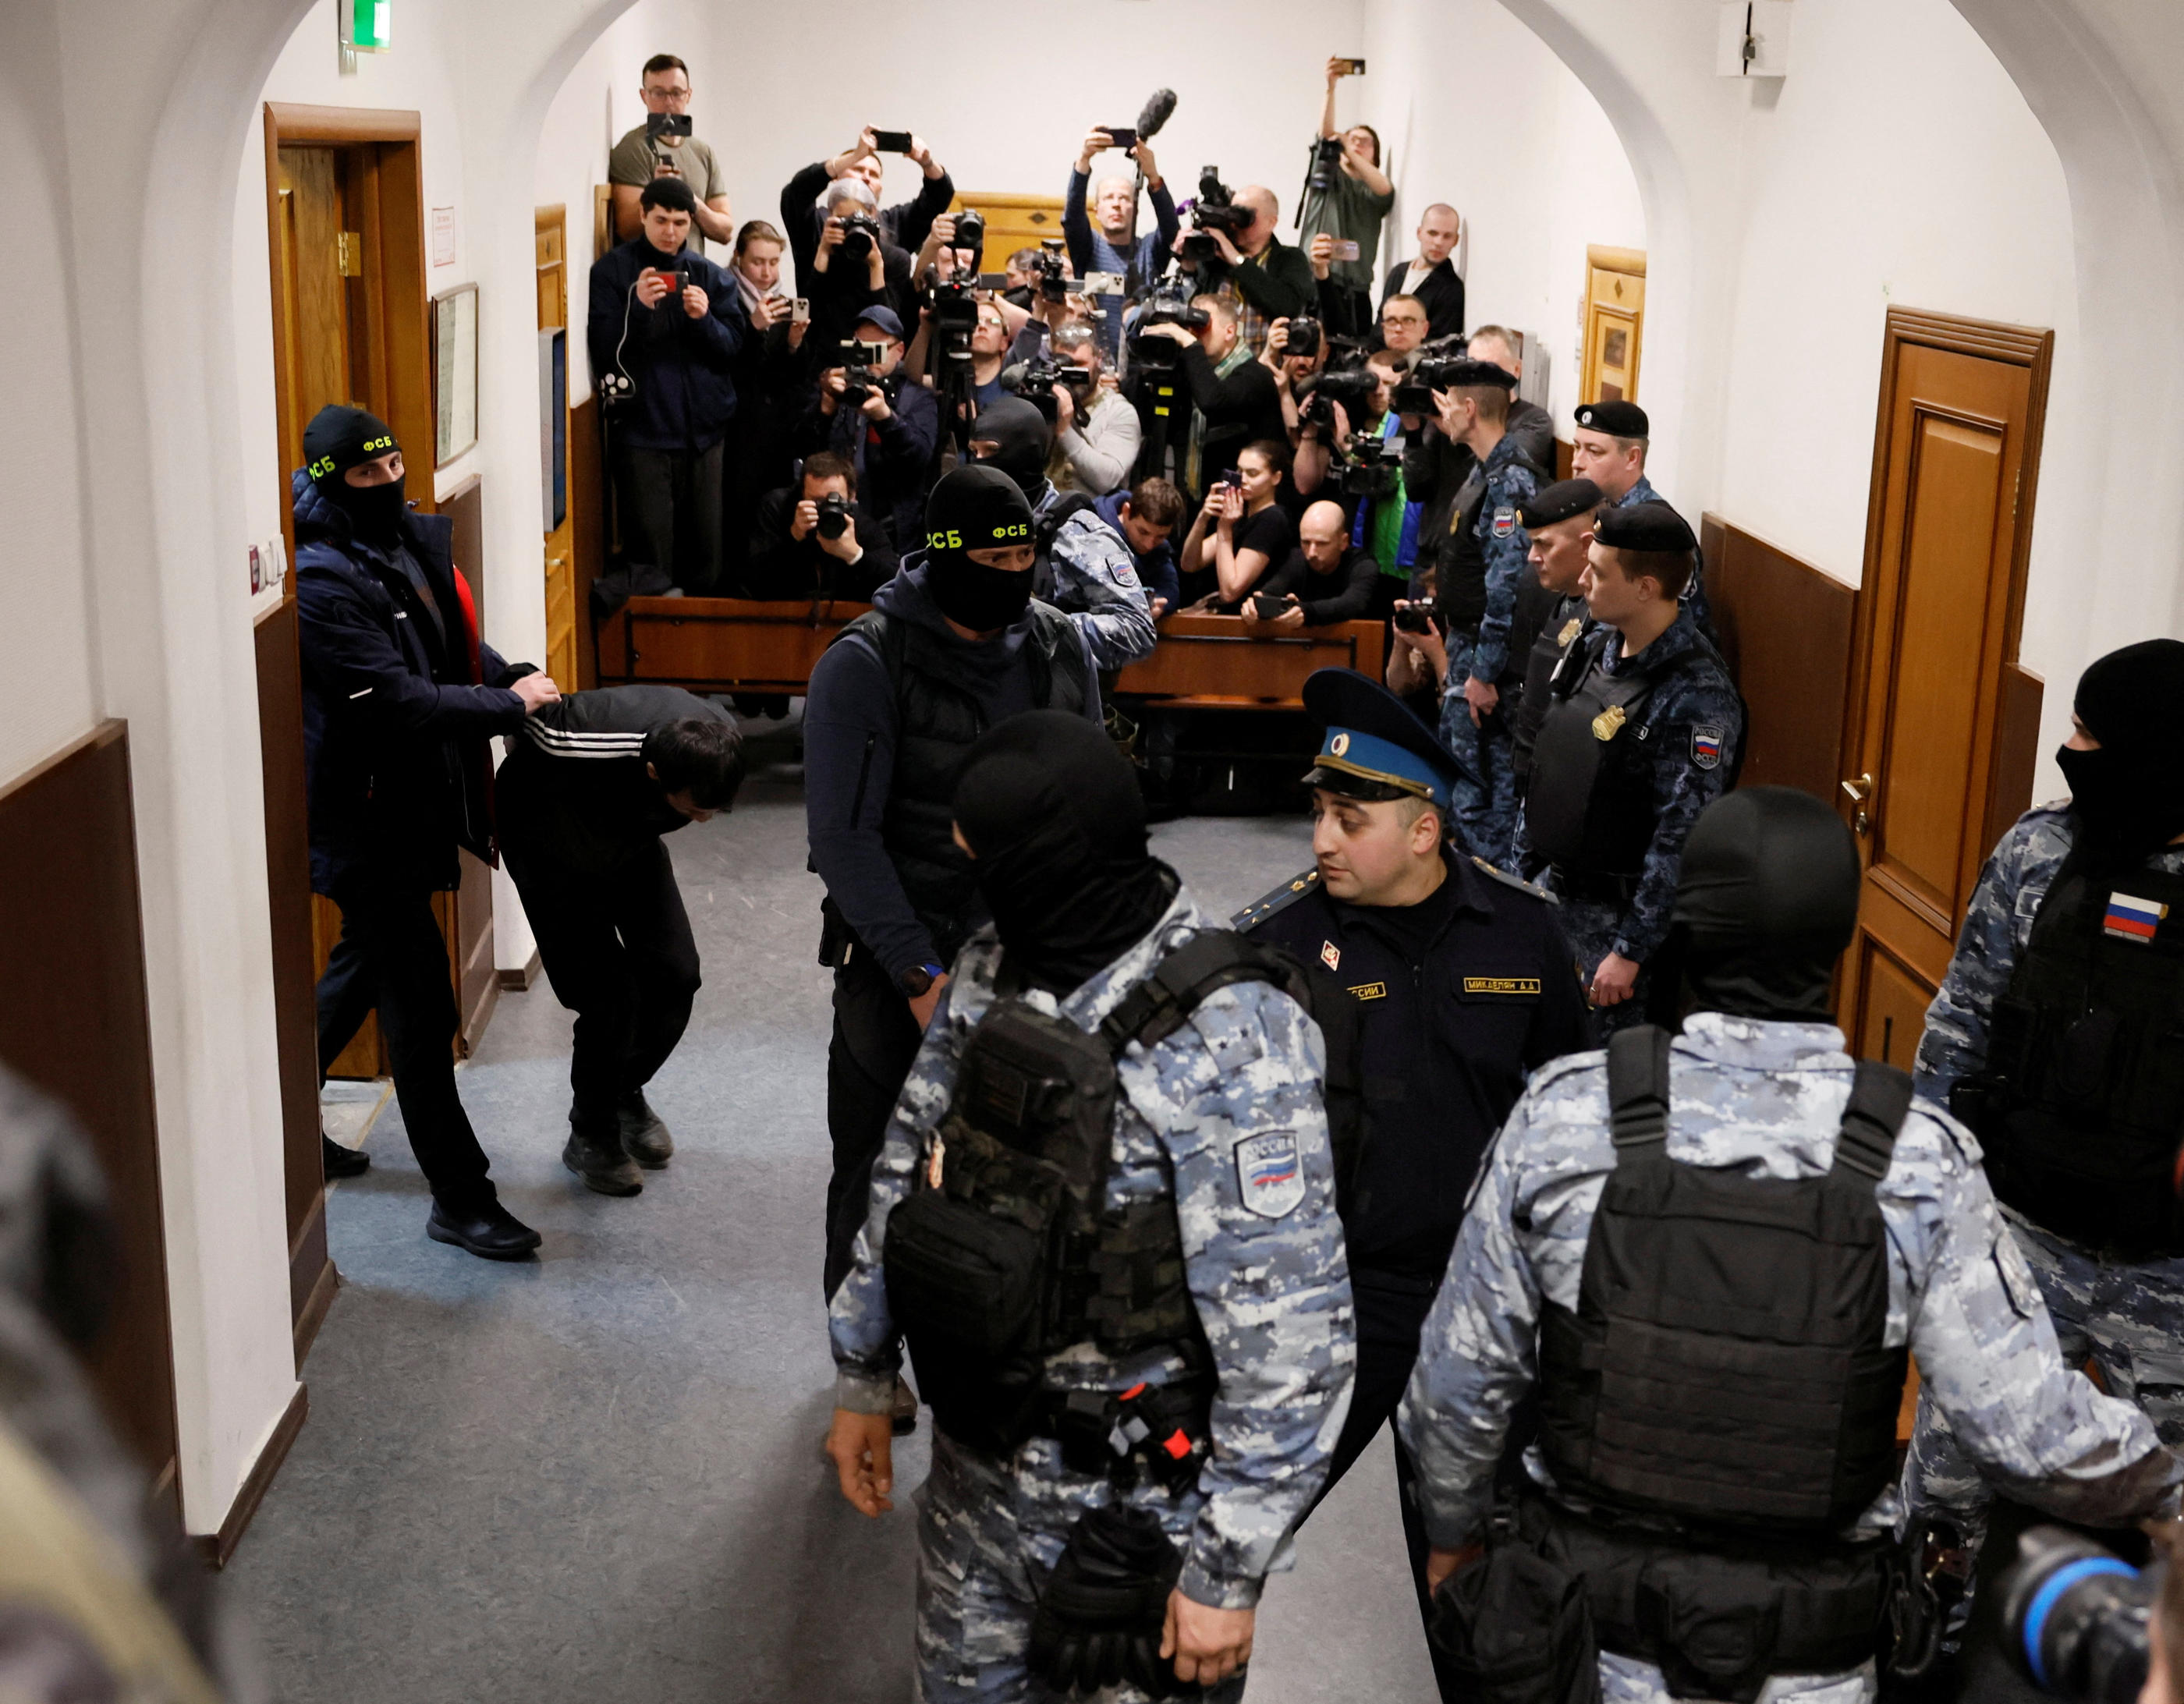 Le groupe Etat islamique, qui a revendiqué l'attaque à Moscou, a confirmé l'arrestation de quatre de ses membres en Russie. REUTERS/Shamil Zhumatov